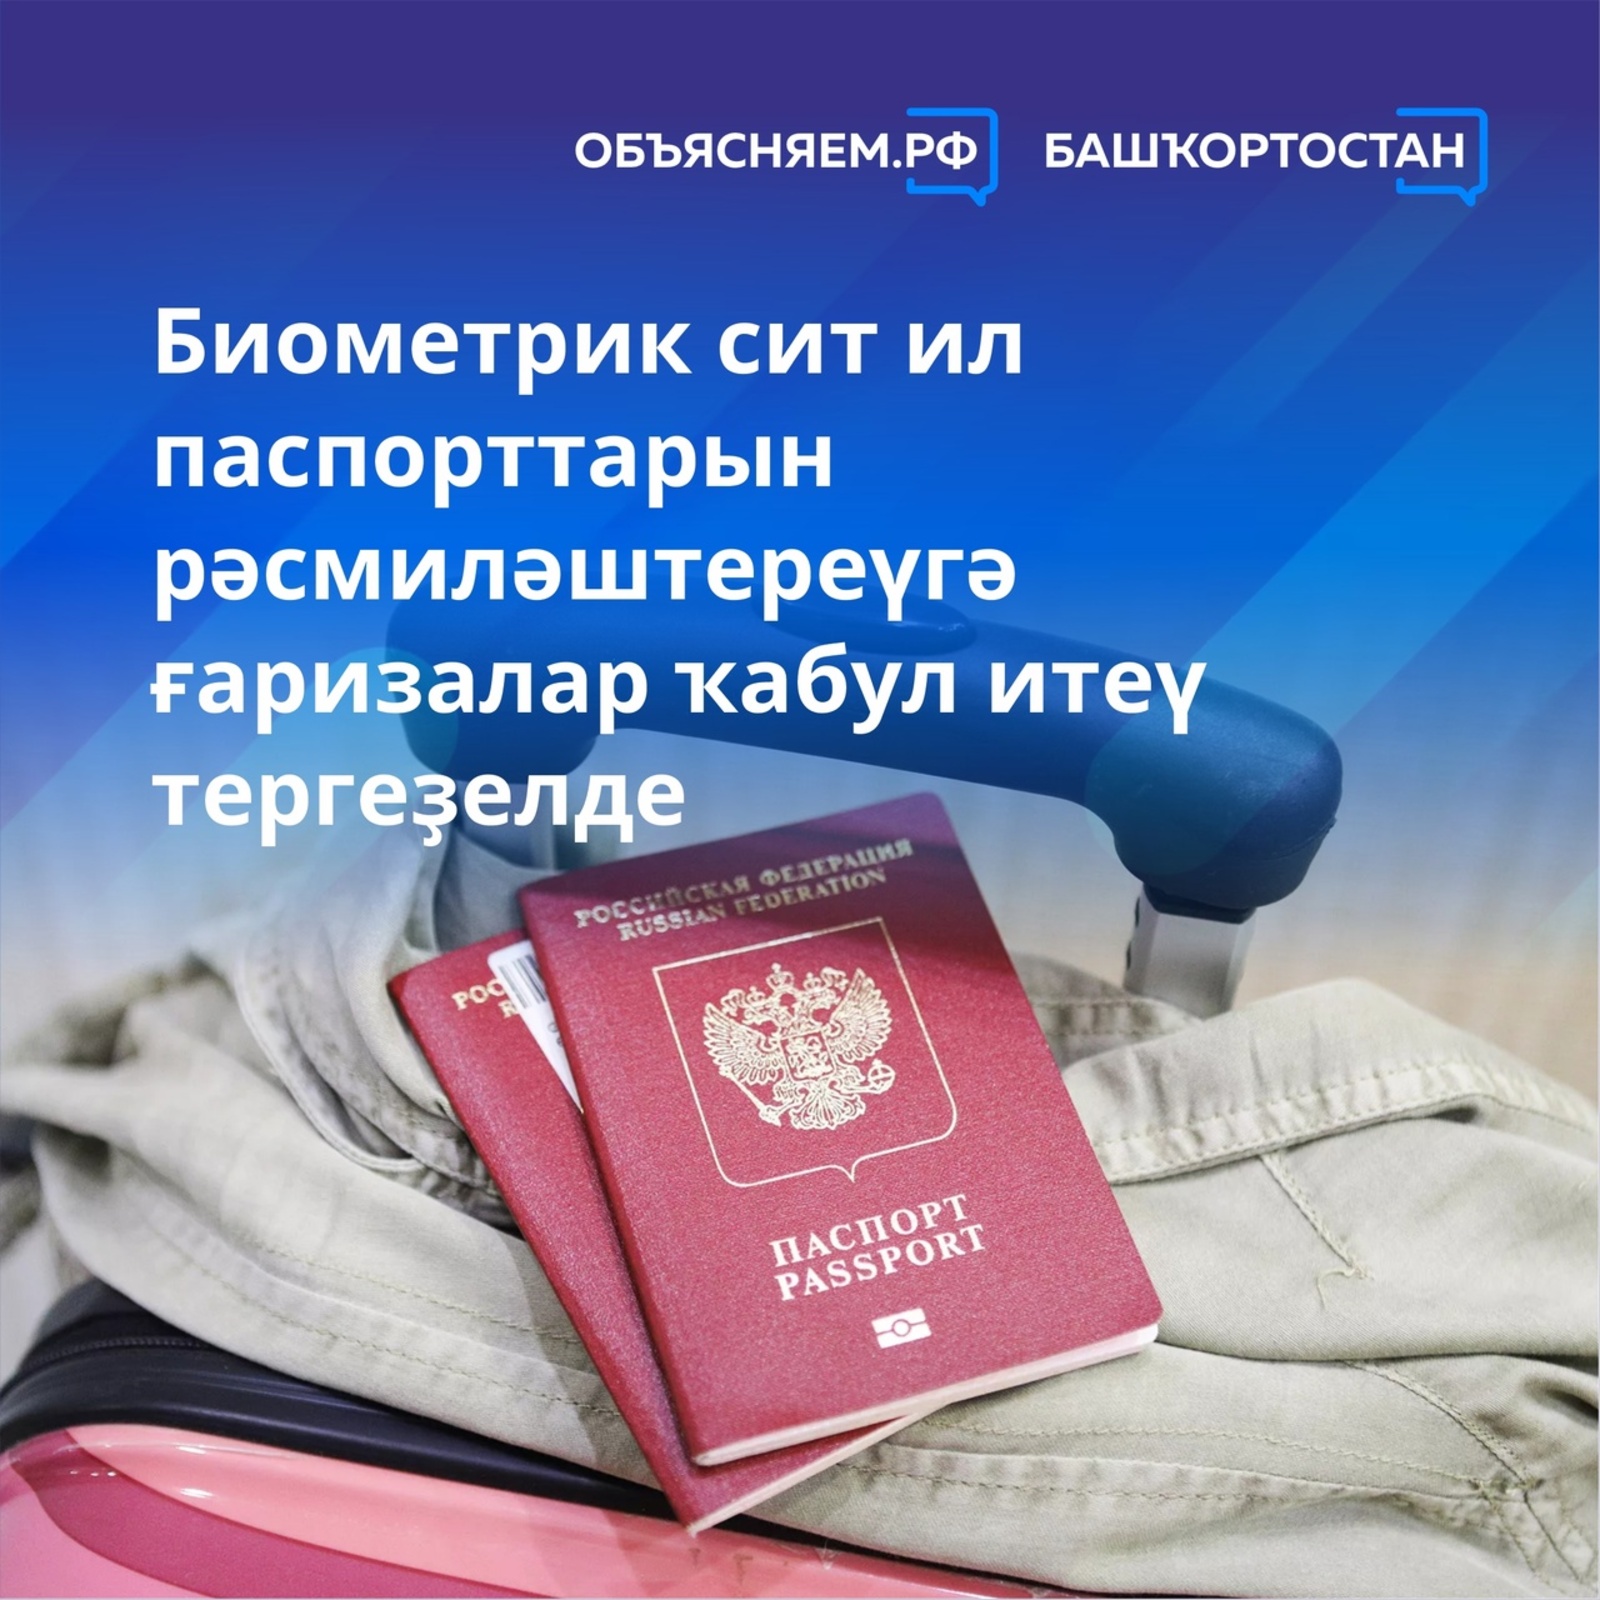 Иғтибар, 10 йылға биометрик сит ил паспорттарын рәсмиләштереү өсөн ғаризалар ҡабул итеү тергеҙелде